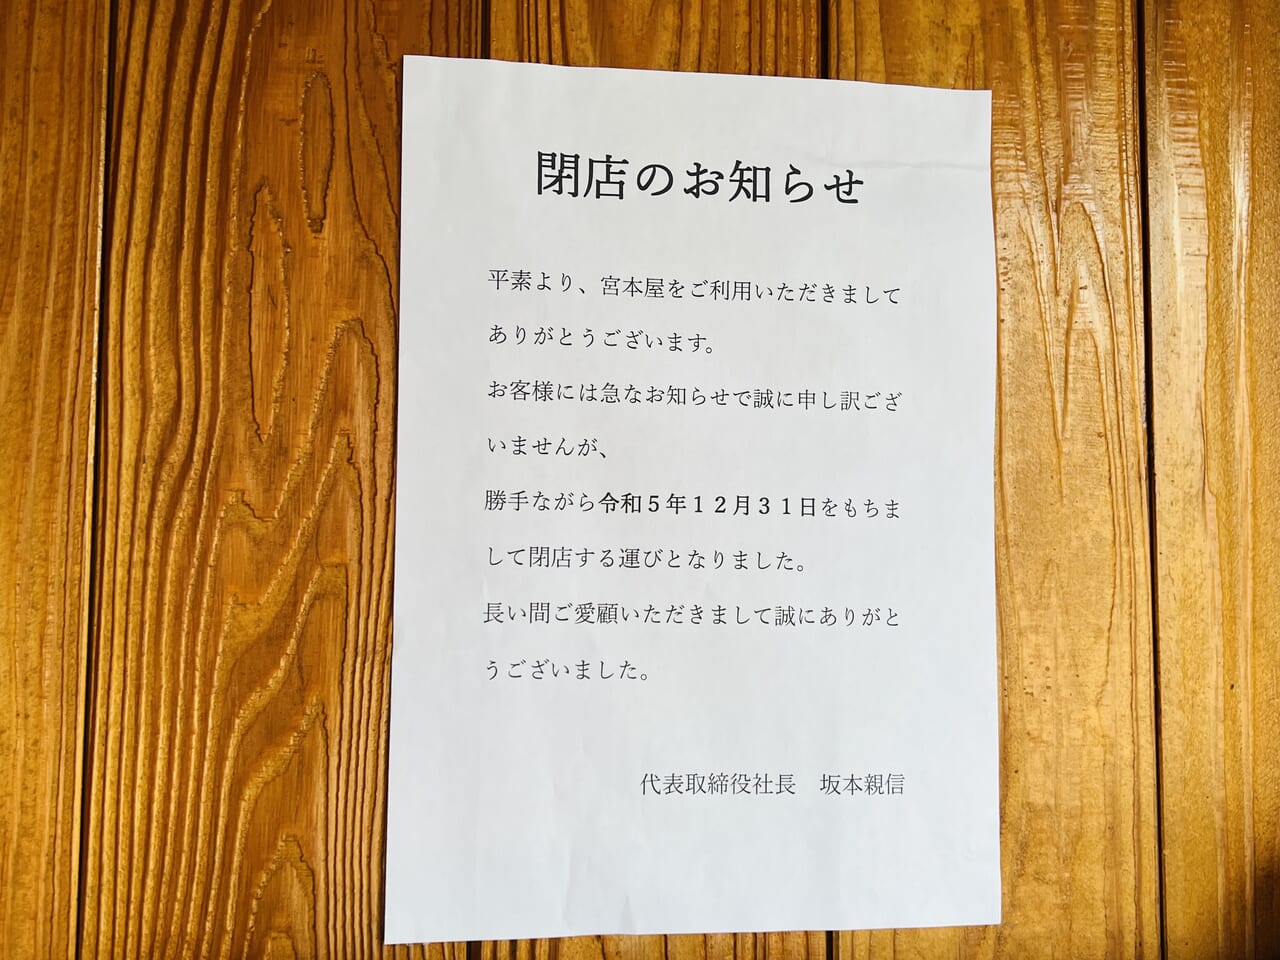 ラーメン・つけ麺「宮本屋」の閉店のお知らせ